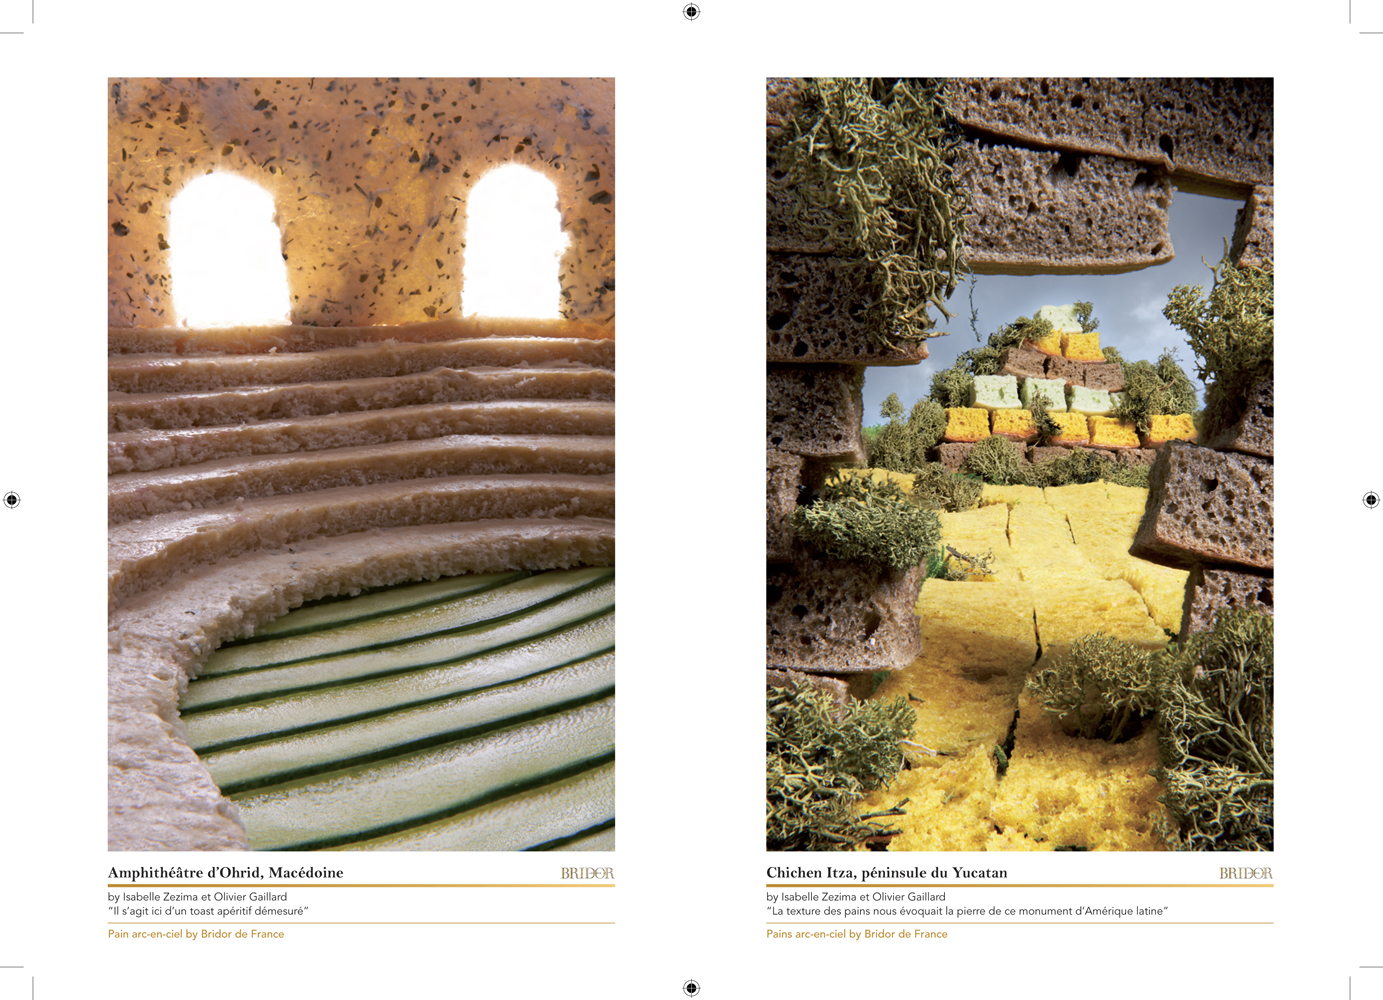 Livret en édition limitée réalisé par l'Agence Lucette pour accompagner l'exposition Bridor, en parallèle du festival de photographie culinaire 2012.